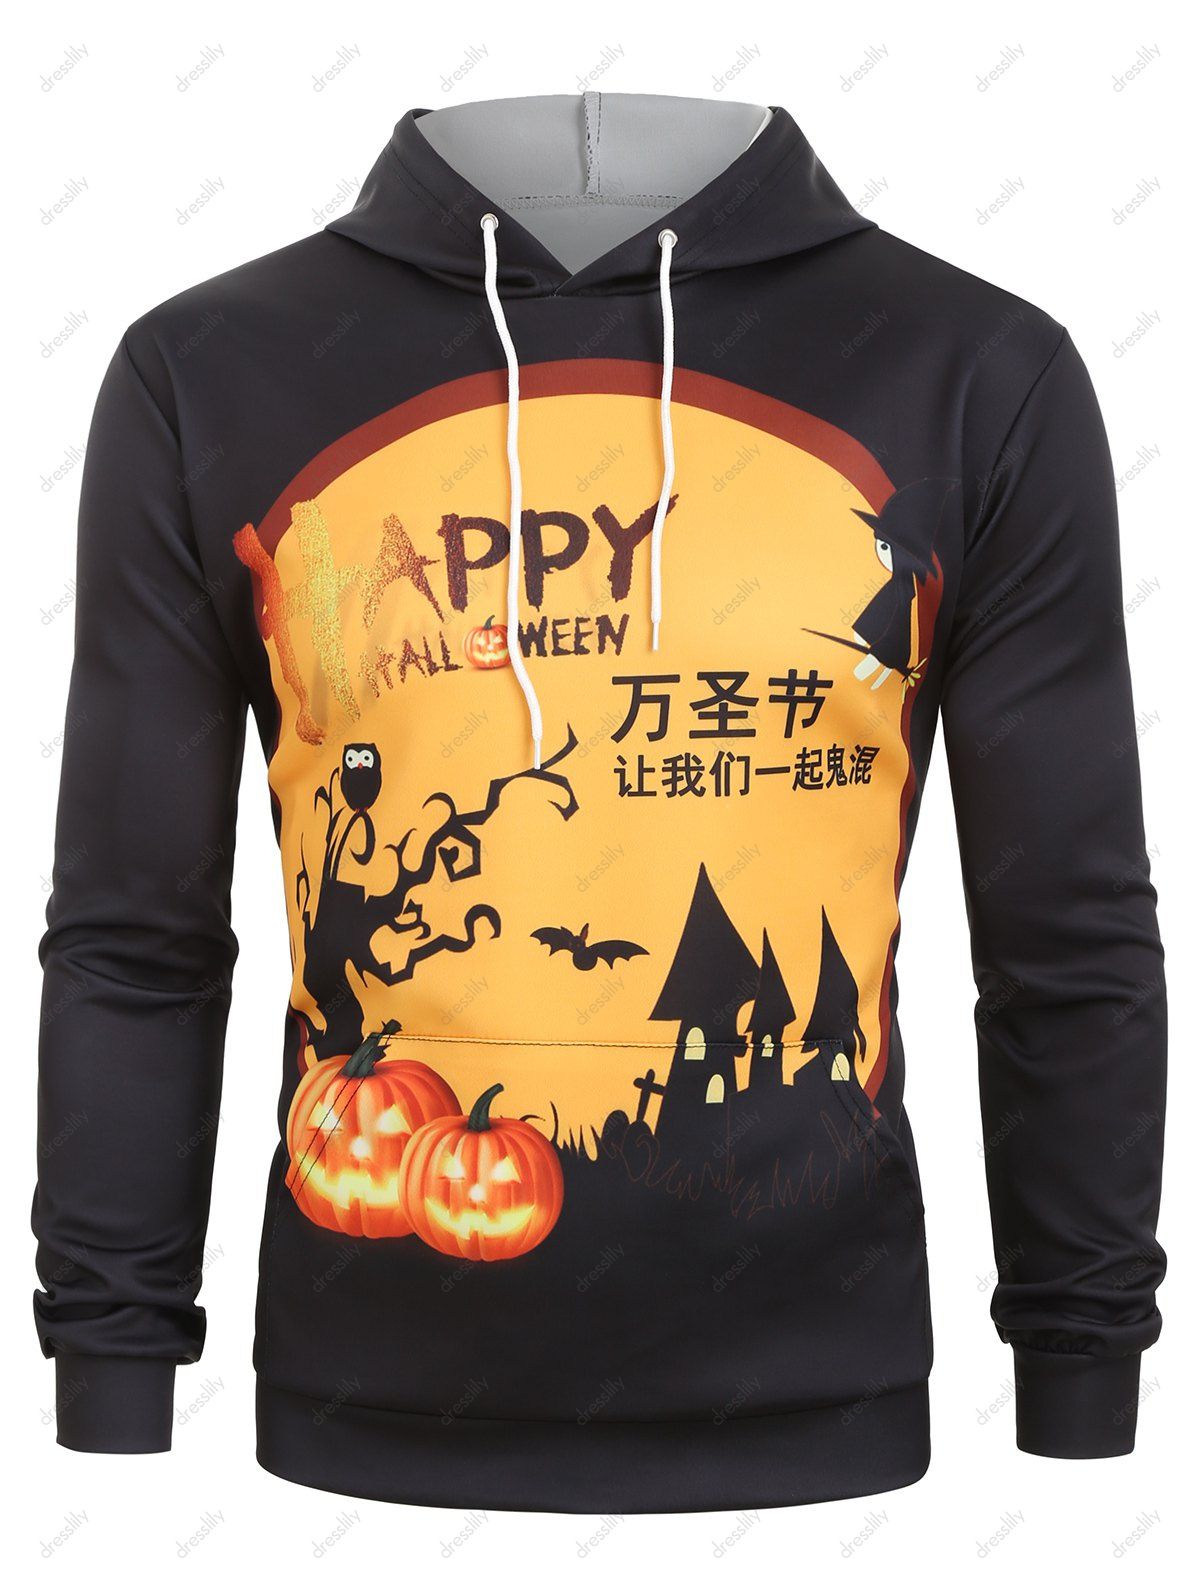 be happy orange and black hoodie